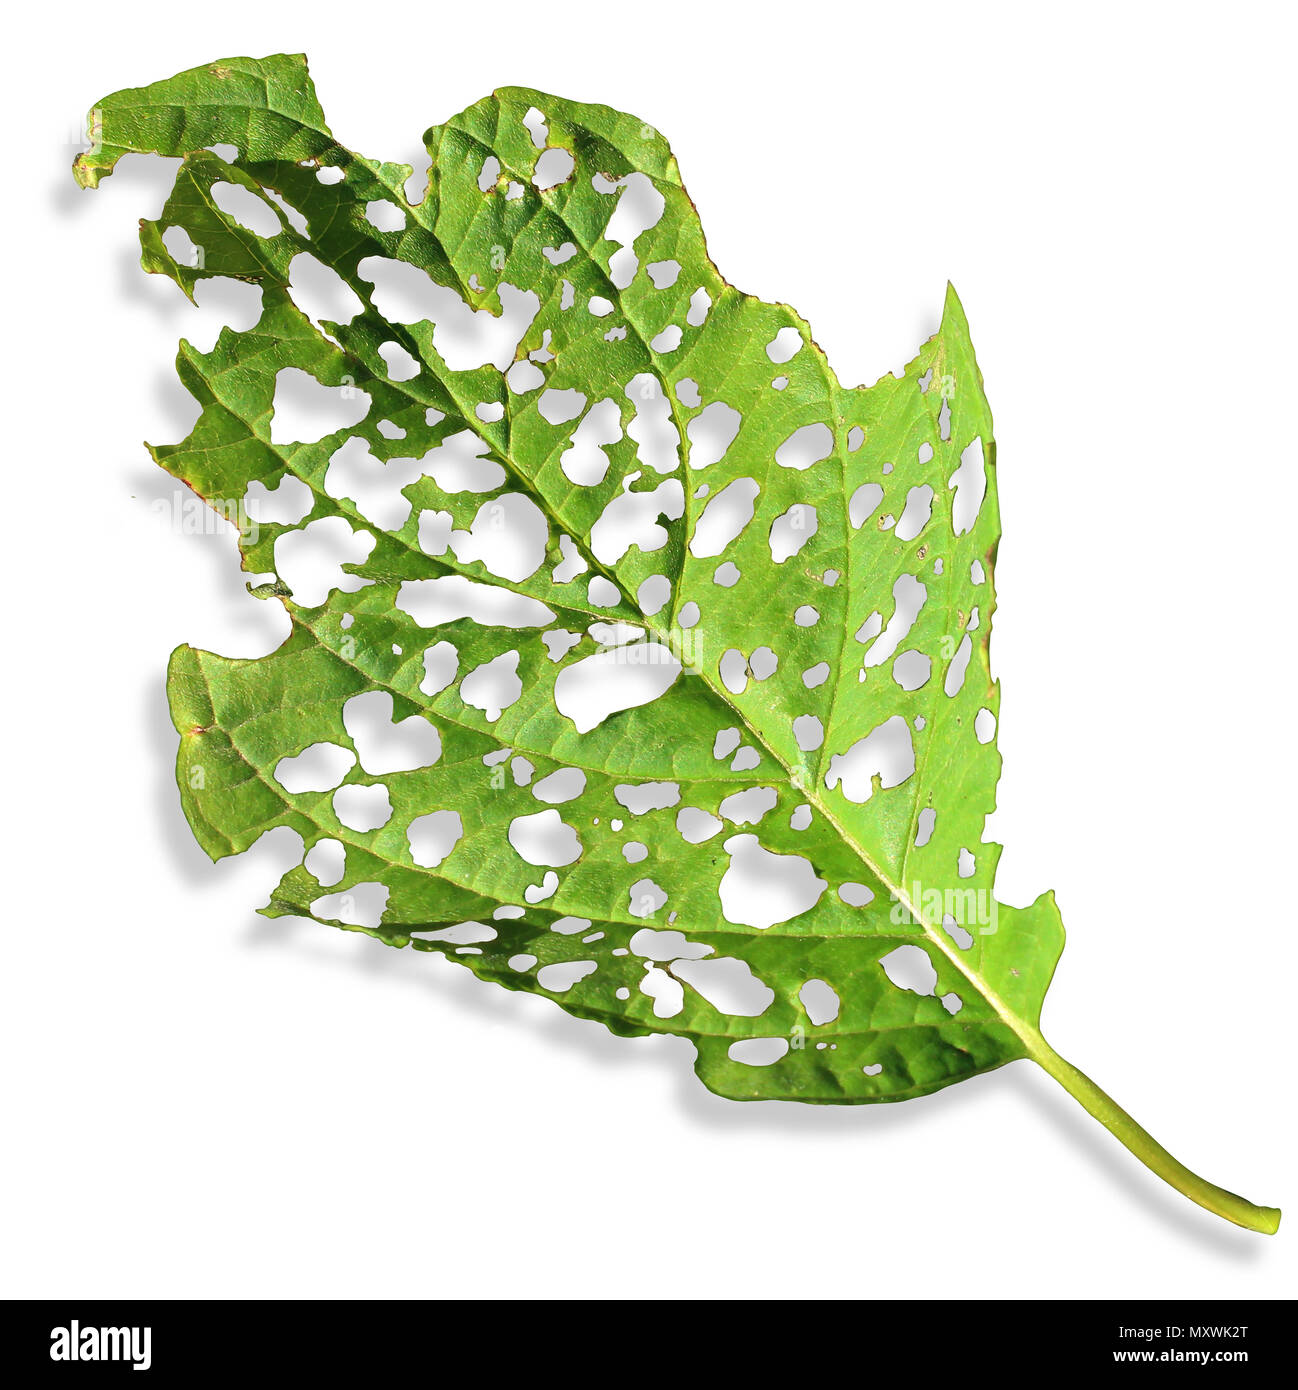 Landwirtschaftliche Schädling-schaden Blatt als eine kranke Pflanze auf weißem Hintergrund mit beschädigte Oberfläche durch ein Insekt oder Krankheit, die als Pestizide oder Herbizide gegessen. Stockfoto